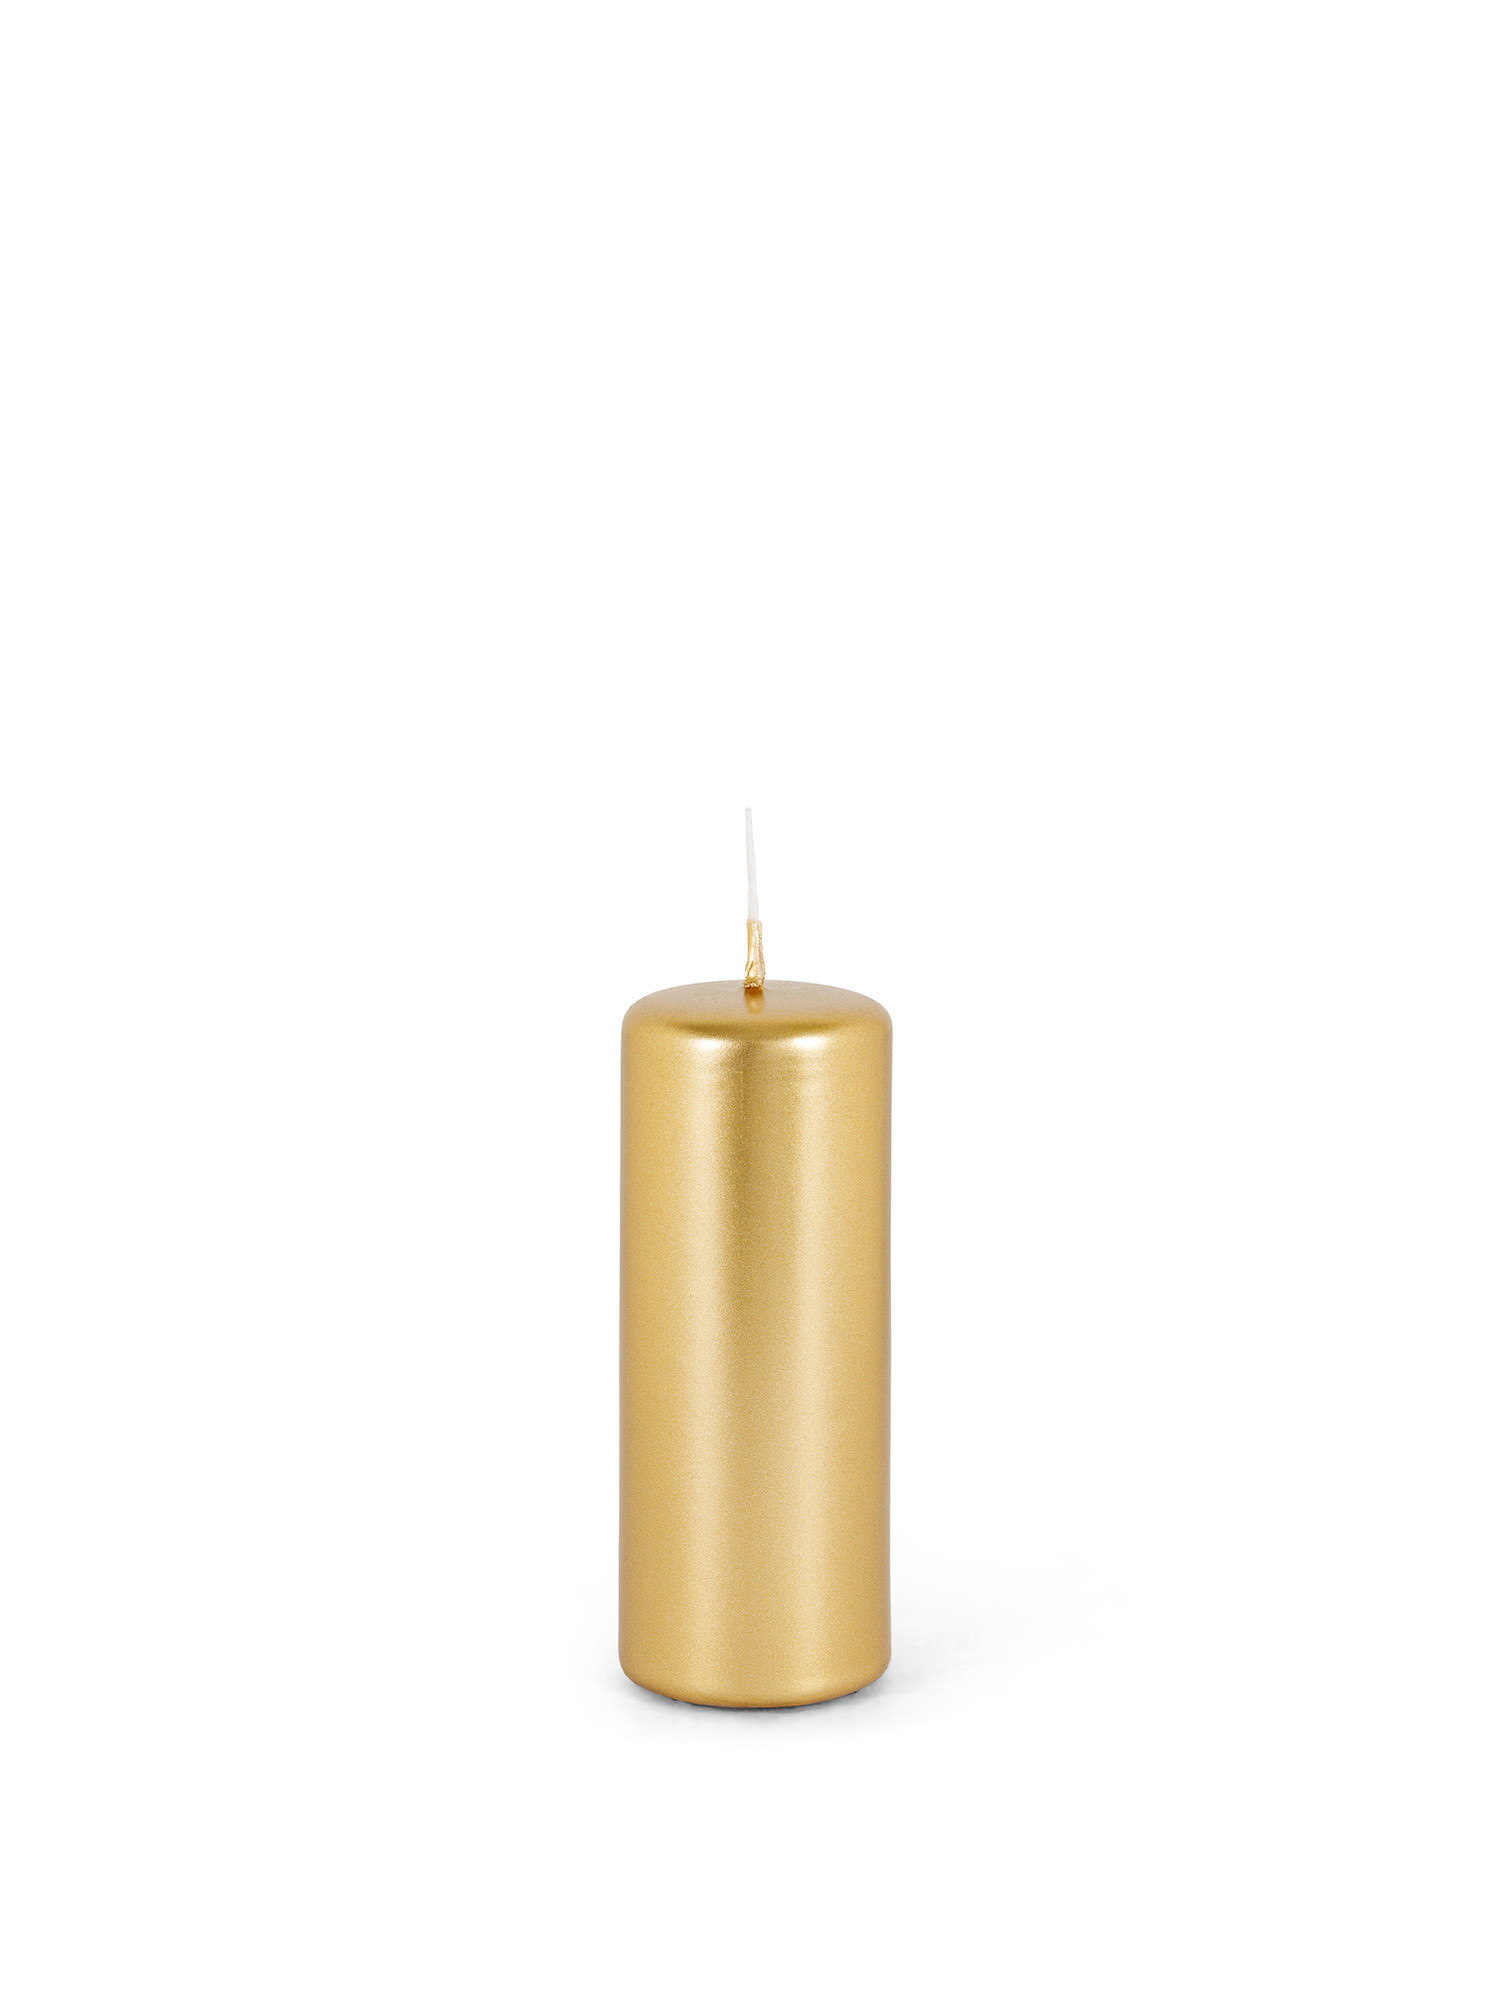 Candela cilindrica oro con petali scolpiti a rilievo – Preziosa Home